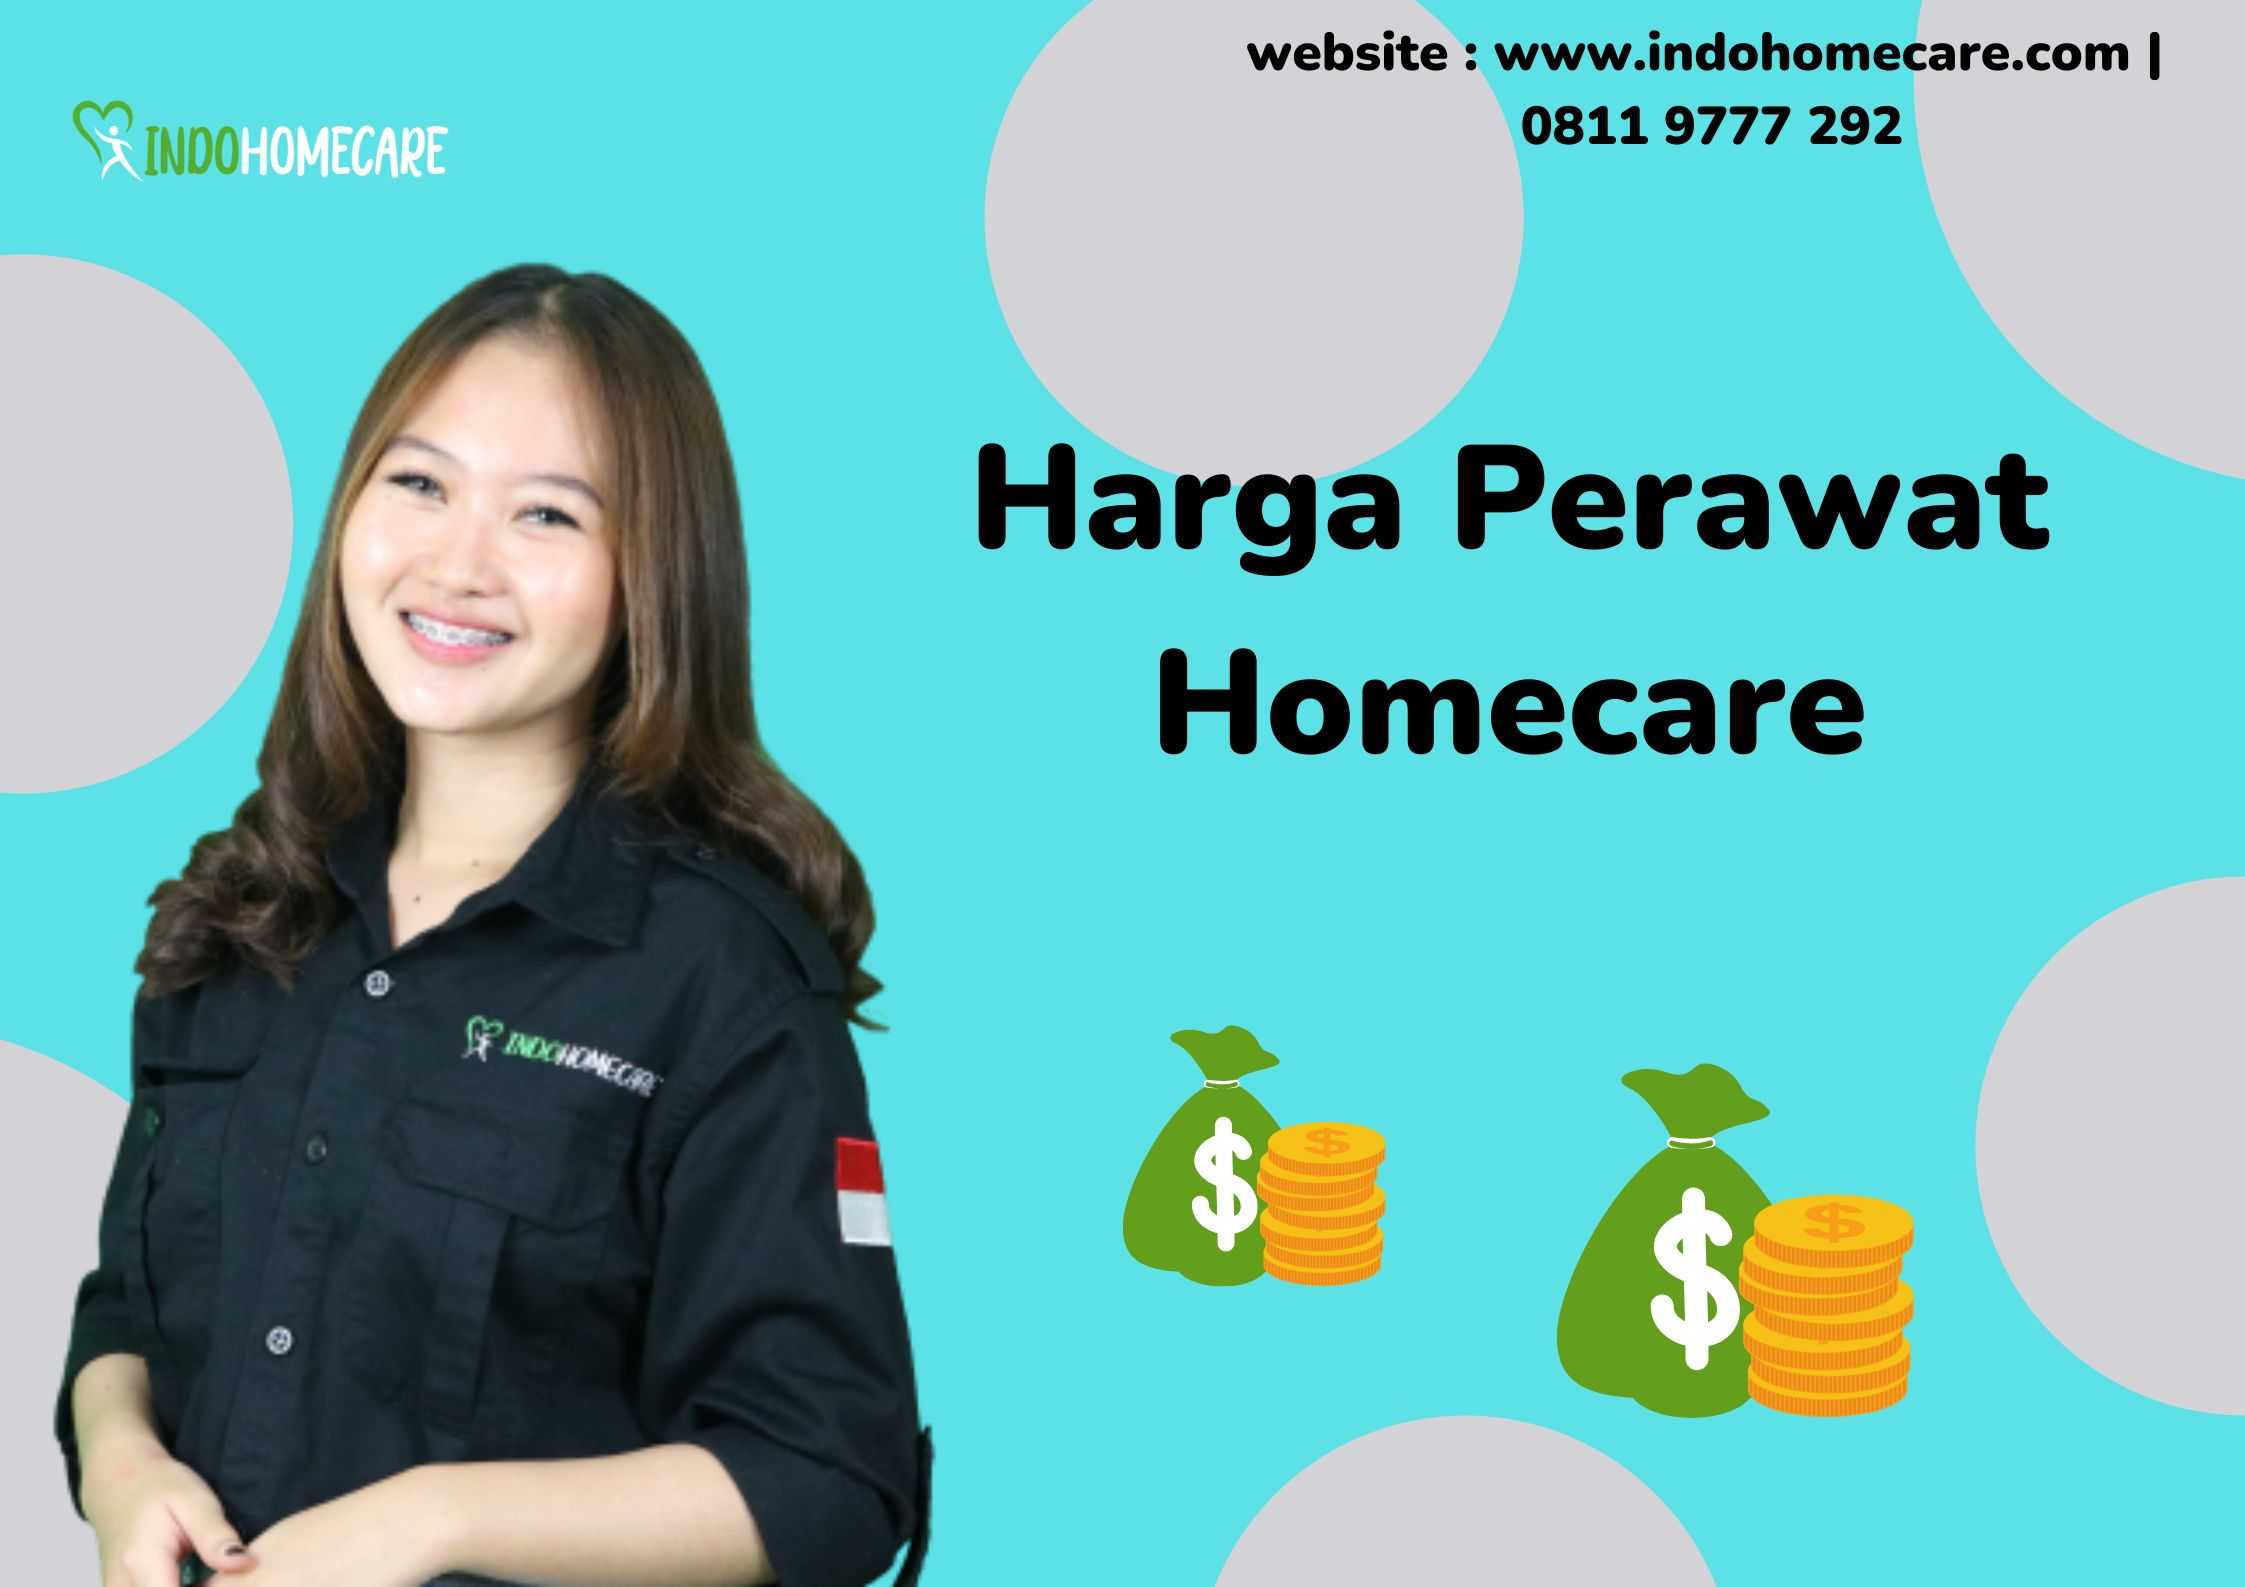 Harge Perawat Homecare